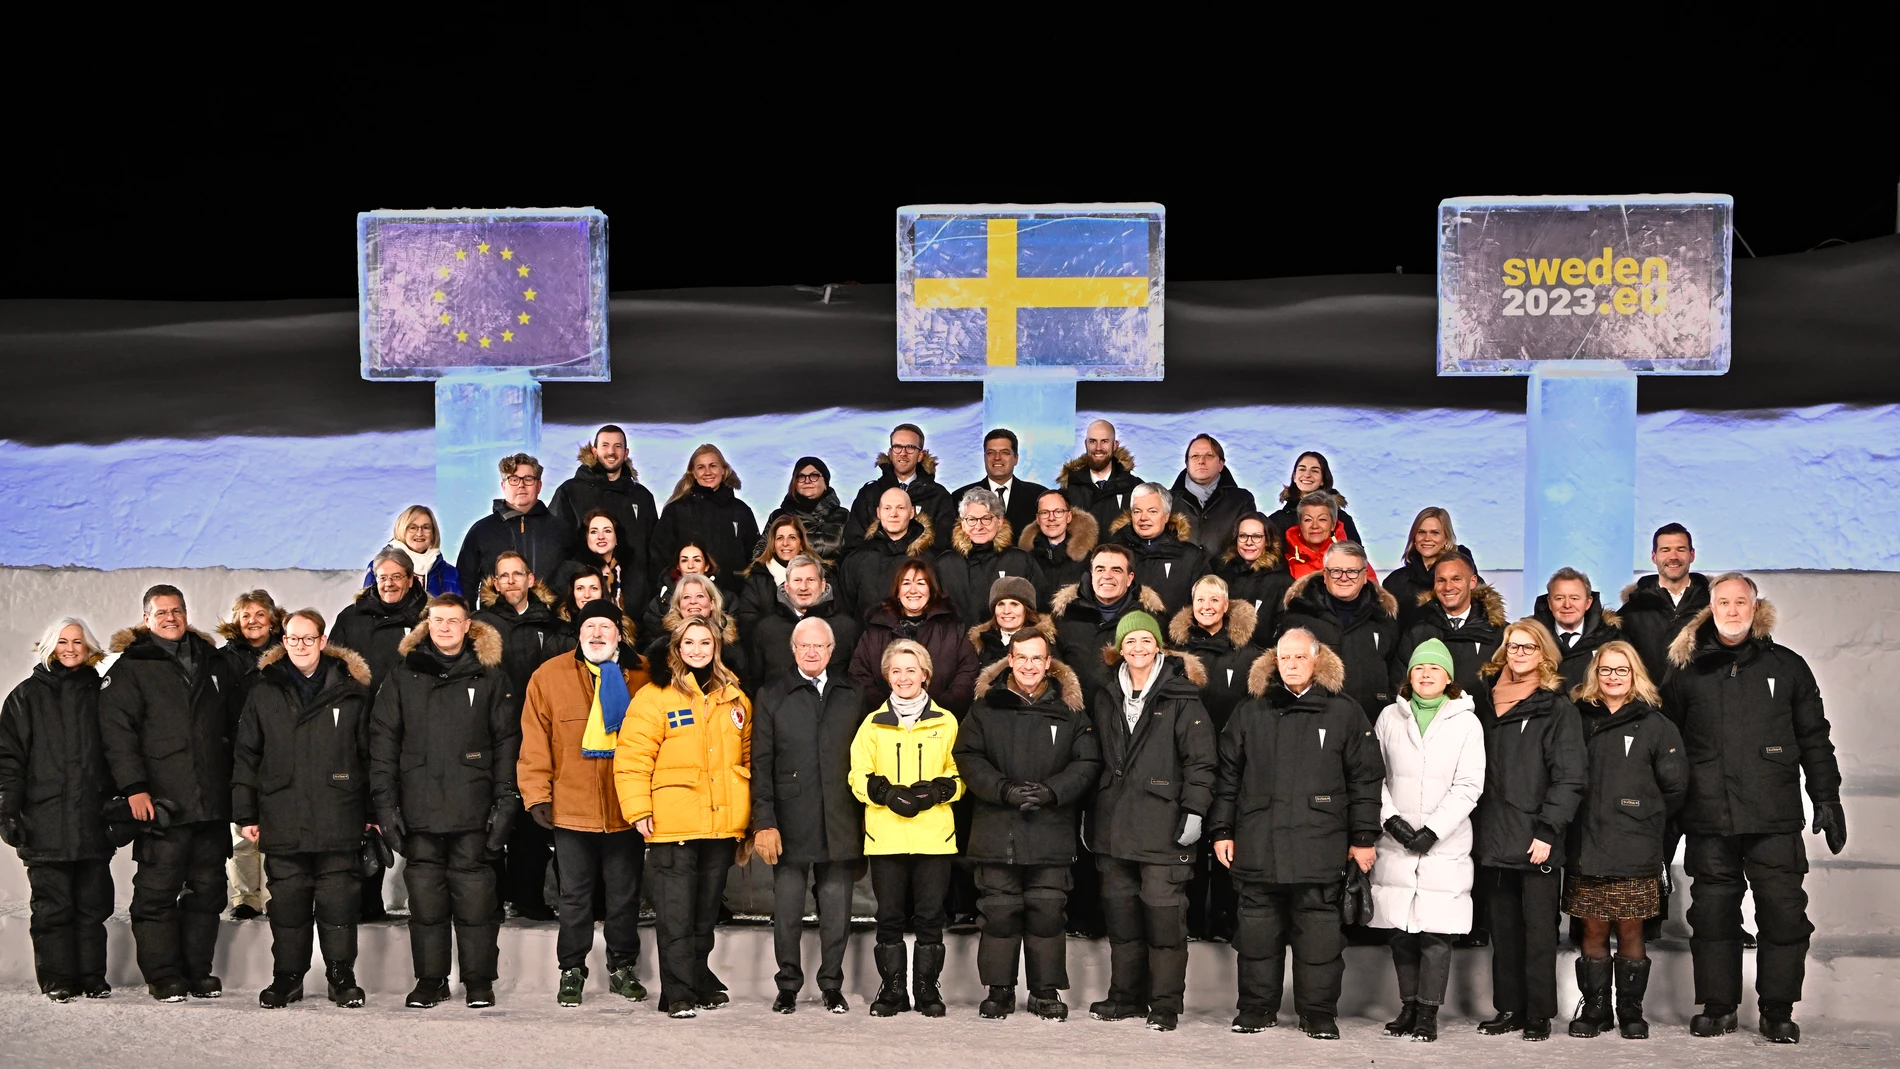 Reunión entre la Comisión Europea y el Gobirno sueco en la ciudad ártica de Kiruna